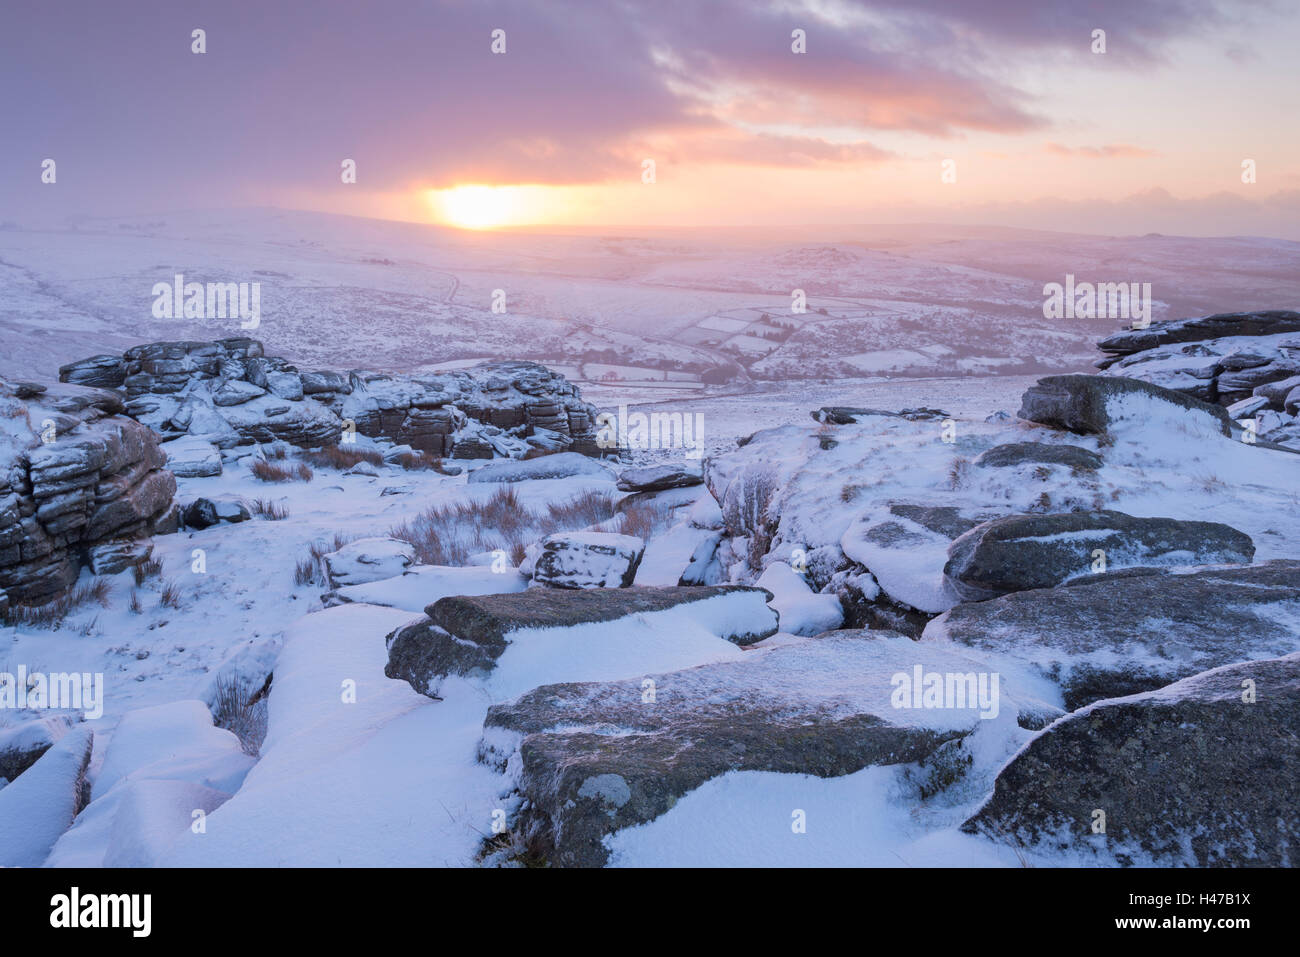 Landes rocheuses couvertes de neige au lever du soleil, grand Tor discontinues, Dartmoor, dans le Devon, Angleterre. L'hiver (Janvier) 2015. Banque D'Images